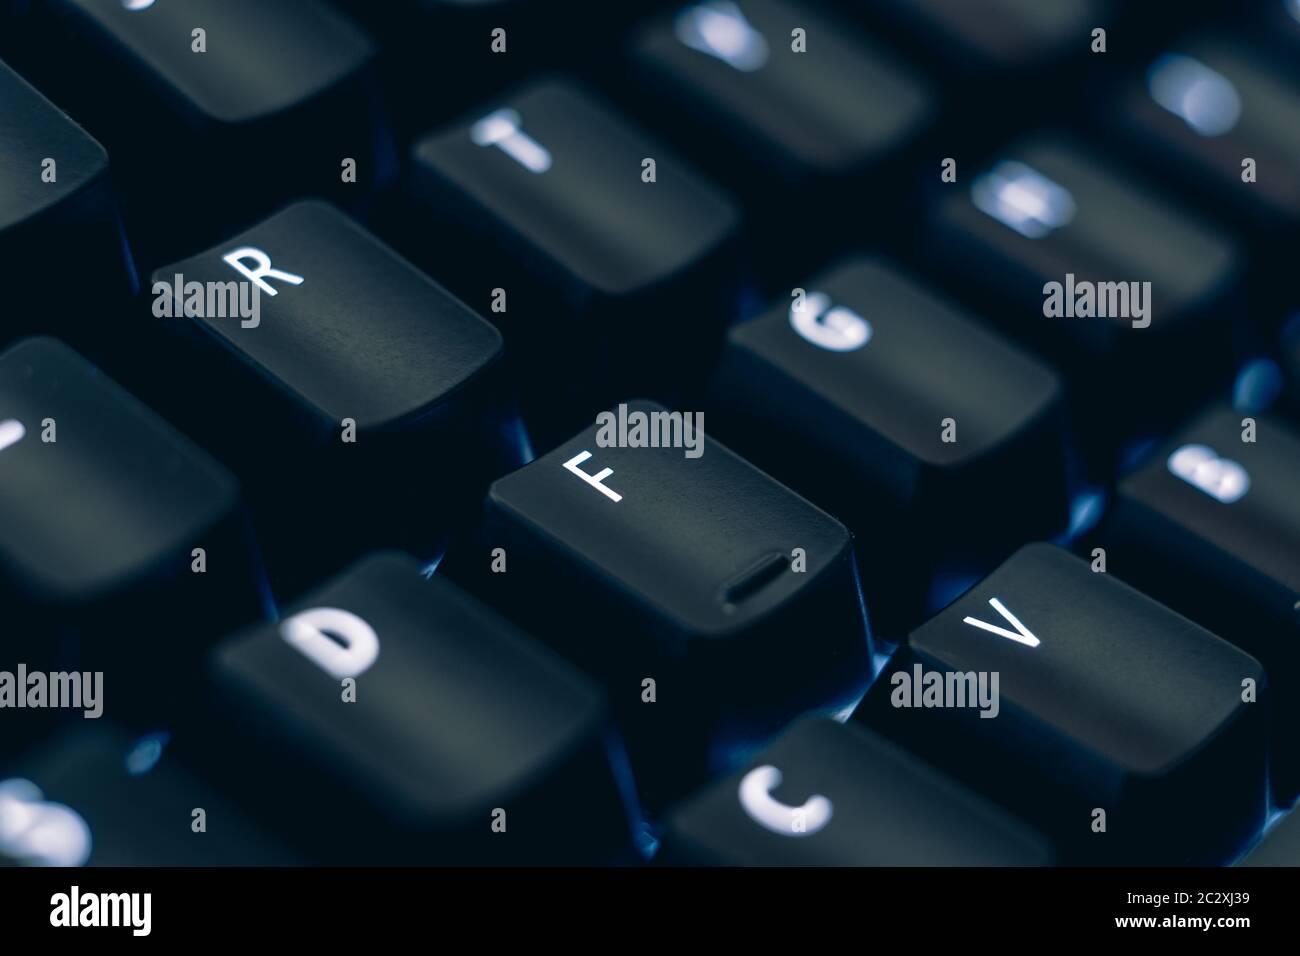 Makrofoto der mechanischen Tastatur. Konzentrieren Sie sich auf die Buchstaben R und F-Tasten. Die Buchstaben sind auf schwarzen Kunststoff-Tastenkappen geätzt, um die LED-Hintergrundbeleuchtung zu offenbaren. Stockfoto